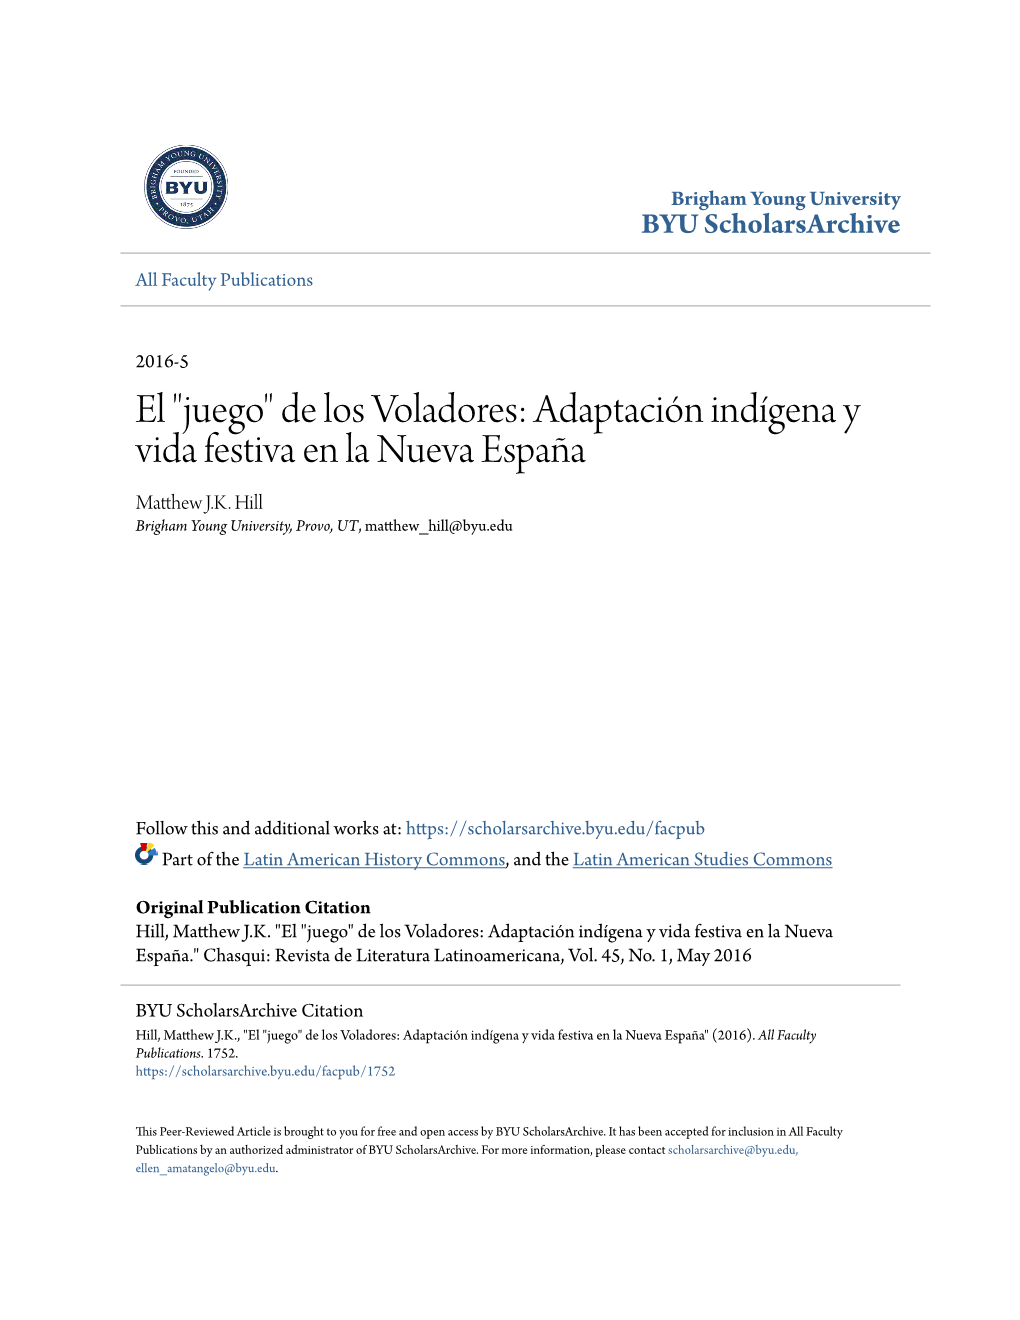 "Juego" De Los Voladores: Adaptación Indígena Y Vida Festiva En La Nueva España Matthew .KJ